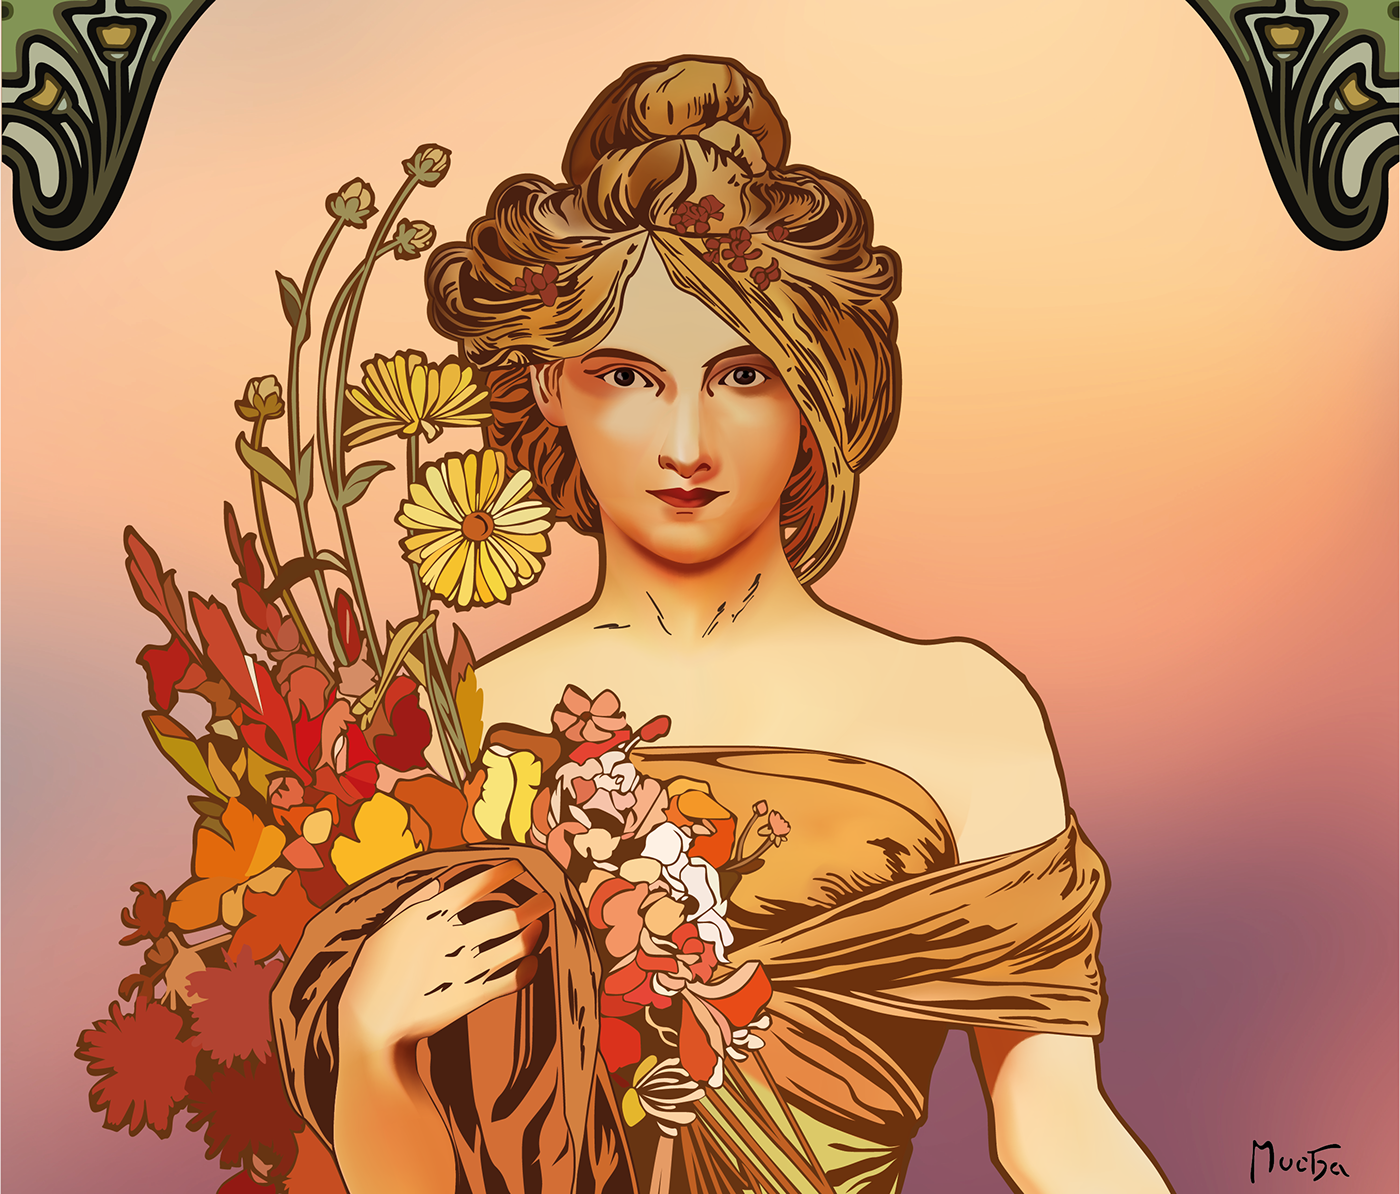 Goddess flora